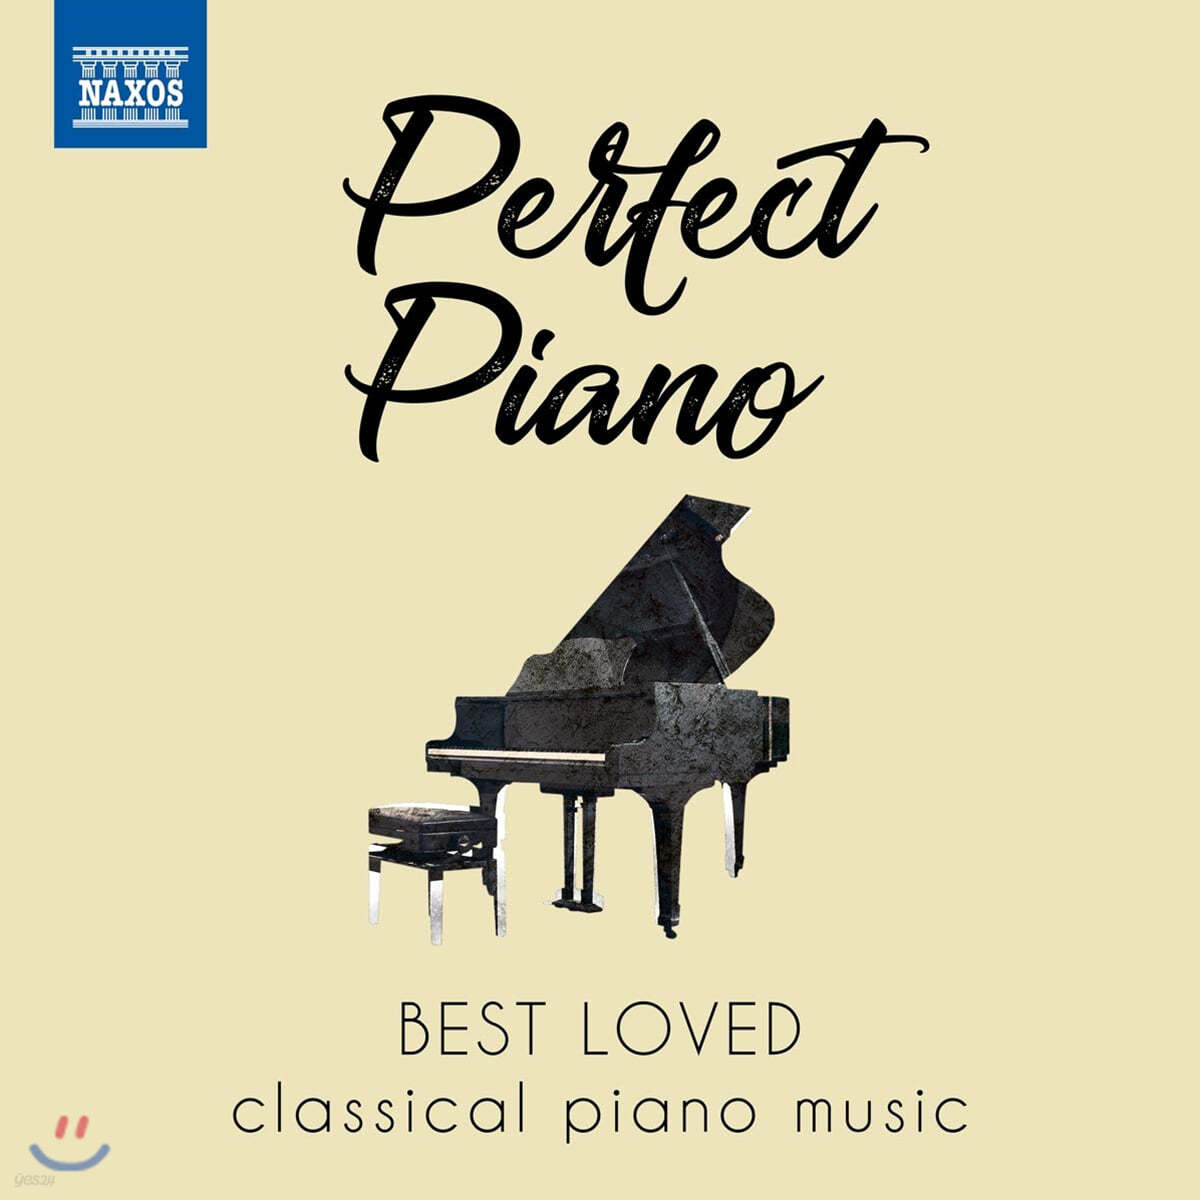 우리가 사랑하는 피아노 작품들 (Perfect Piano - Best Loved Classical Piano Music)